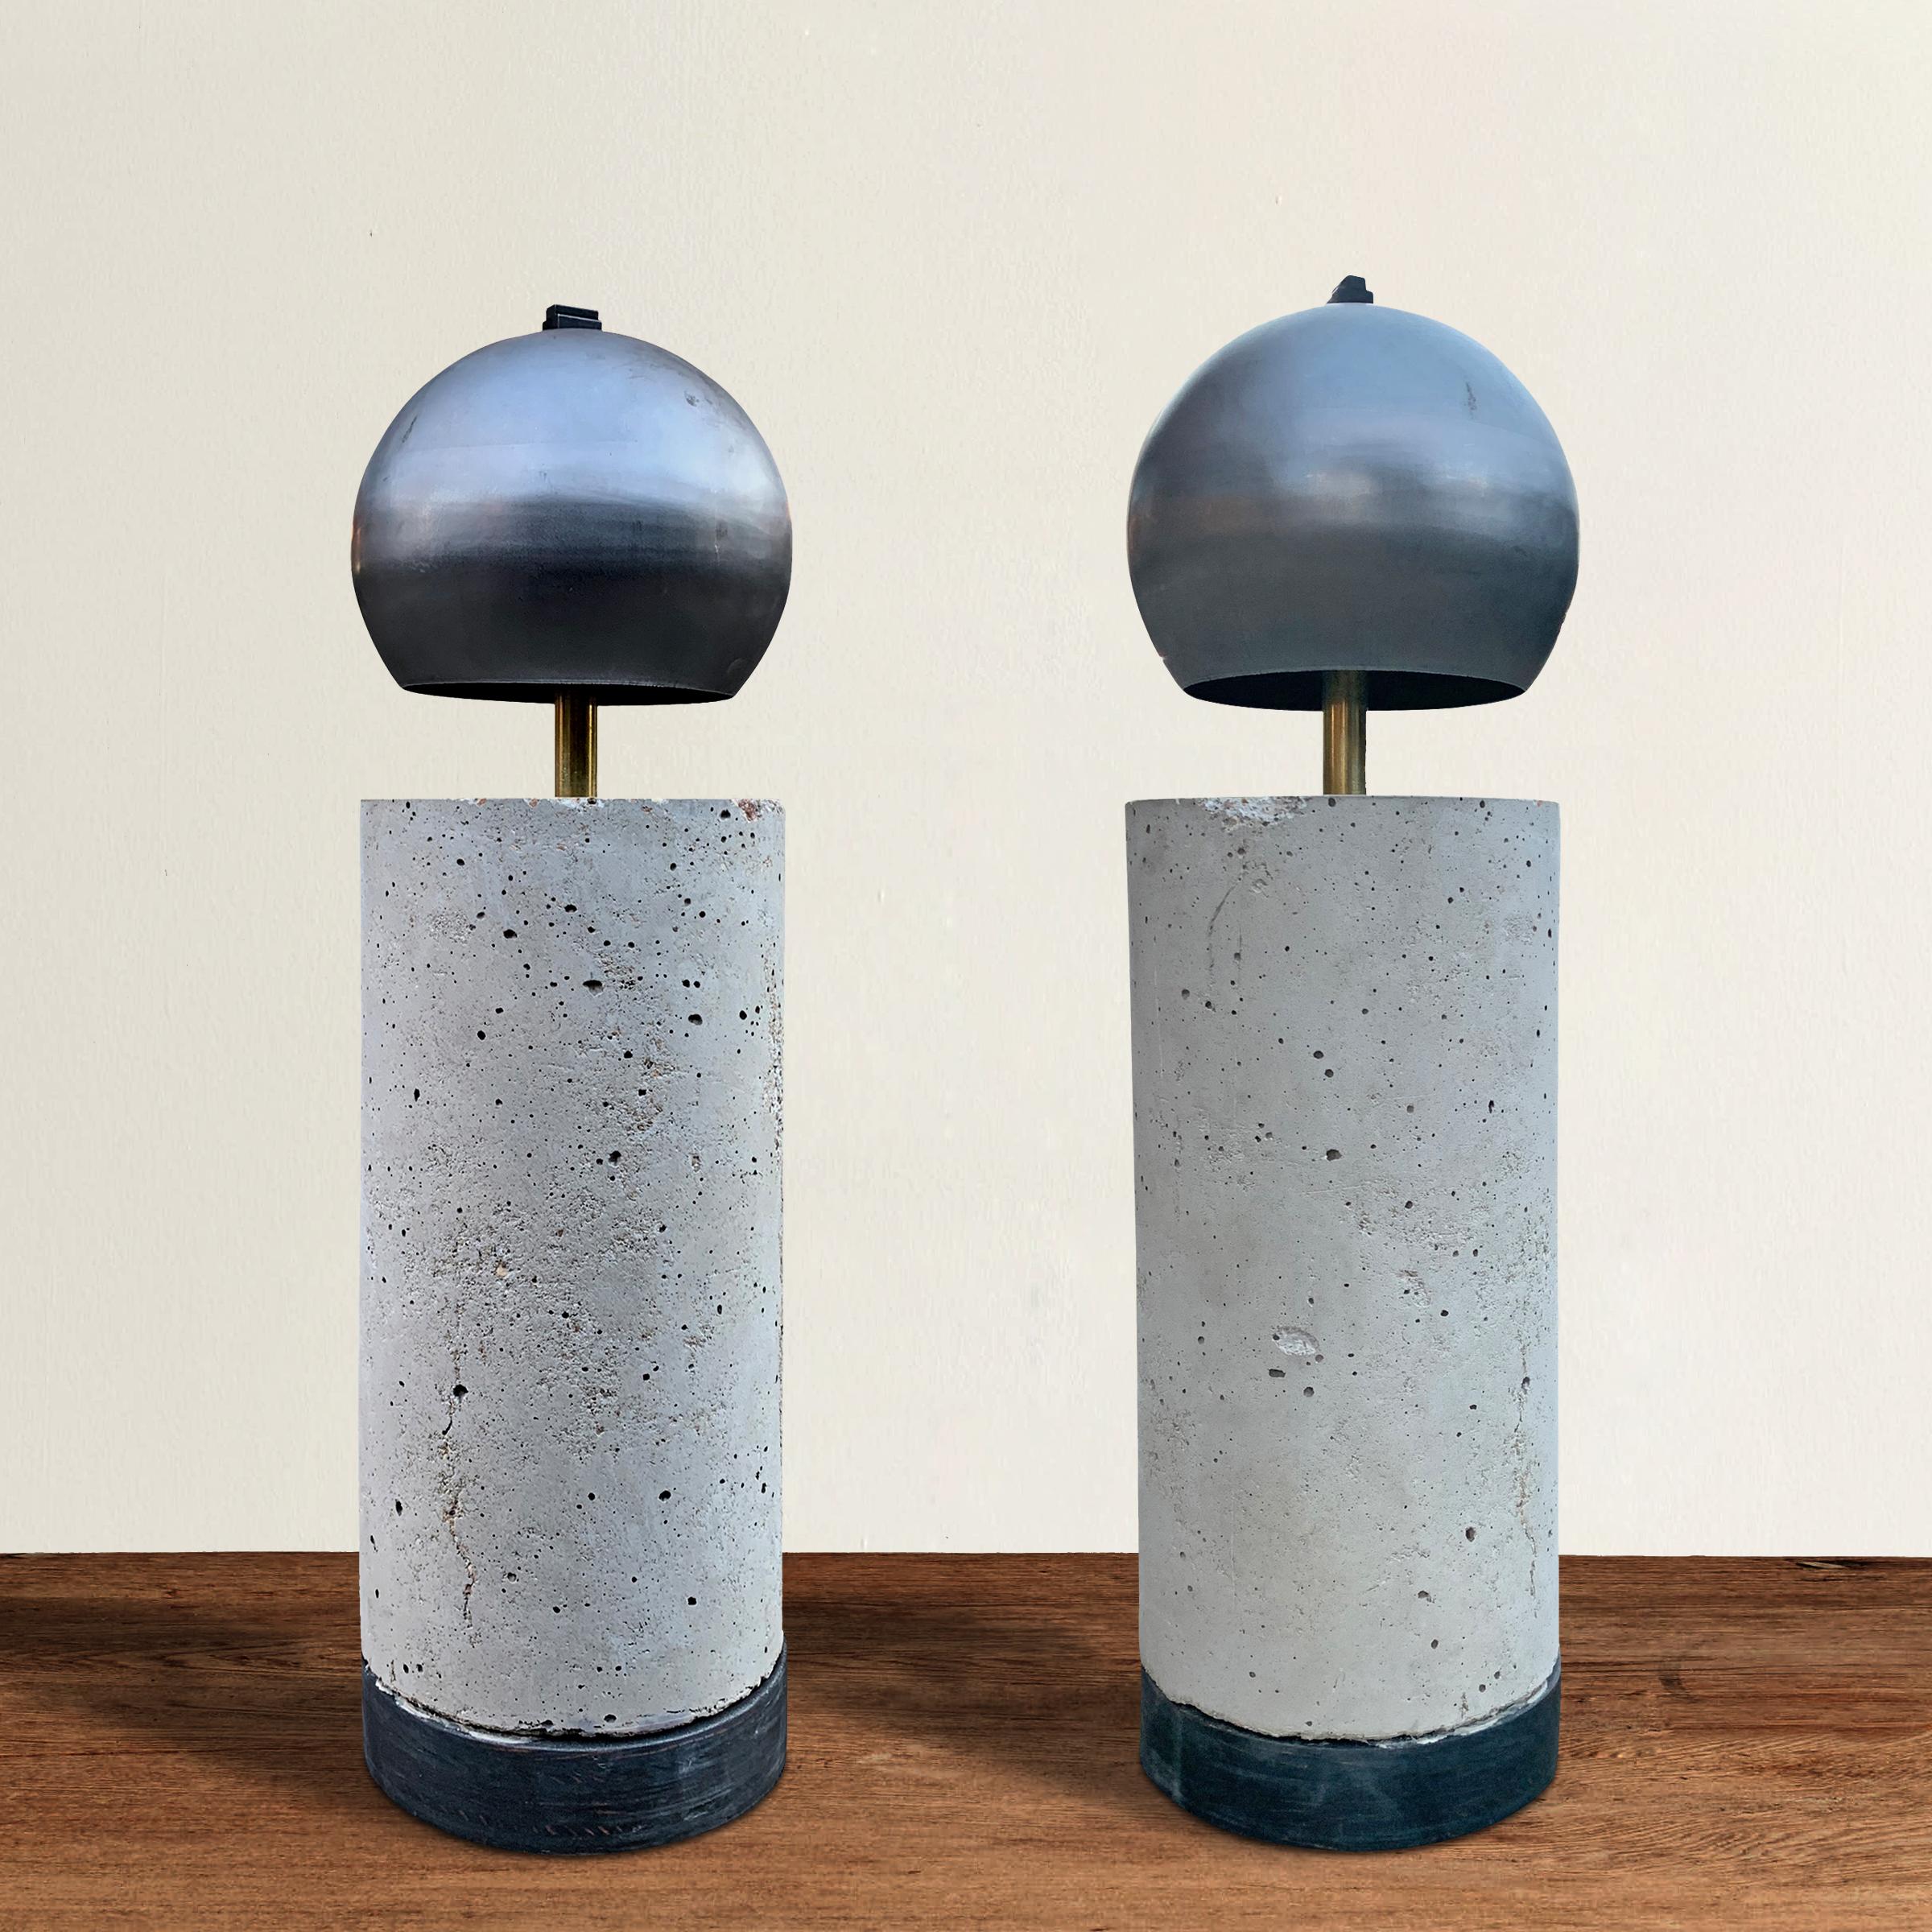 Une paire de lampes de table contemporaines américaines fabriquées par des artistes, conçues dans un esprit brutaliste, avec des abat-jour en forme de dôme en acier, des corps cylindriques en ciment et des bases en bois. Électrifiés pour les